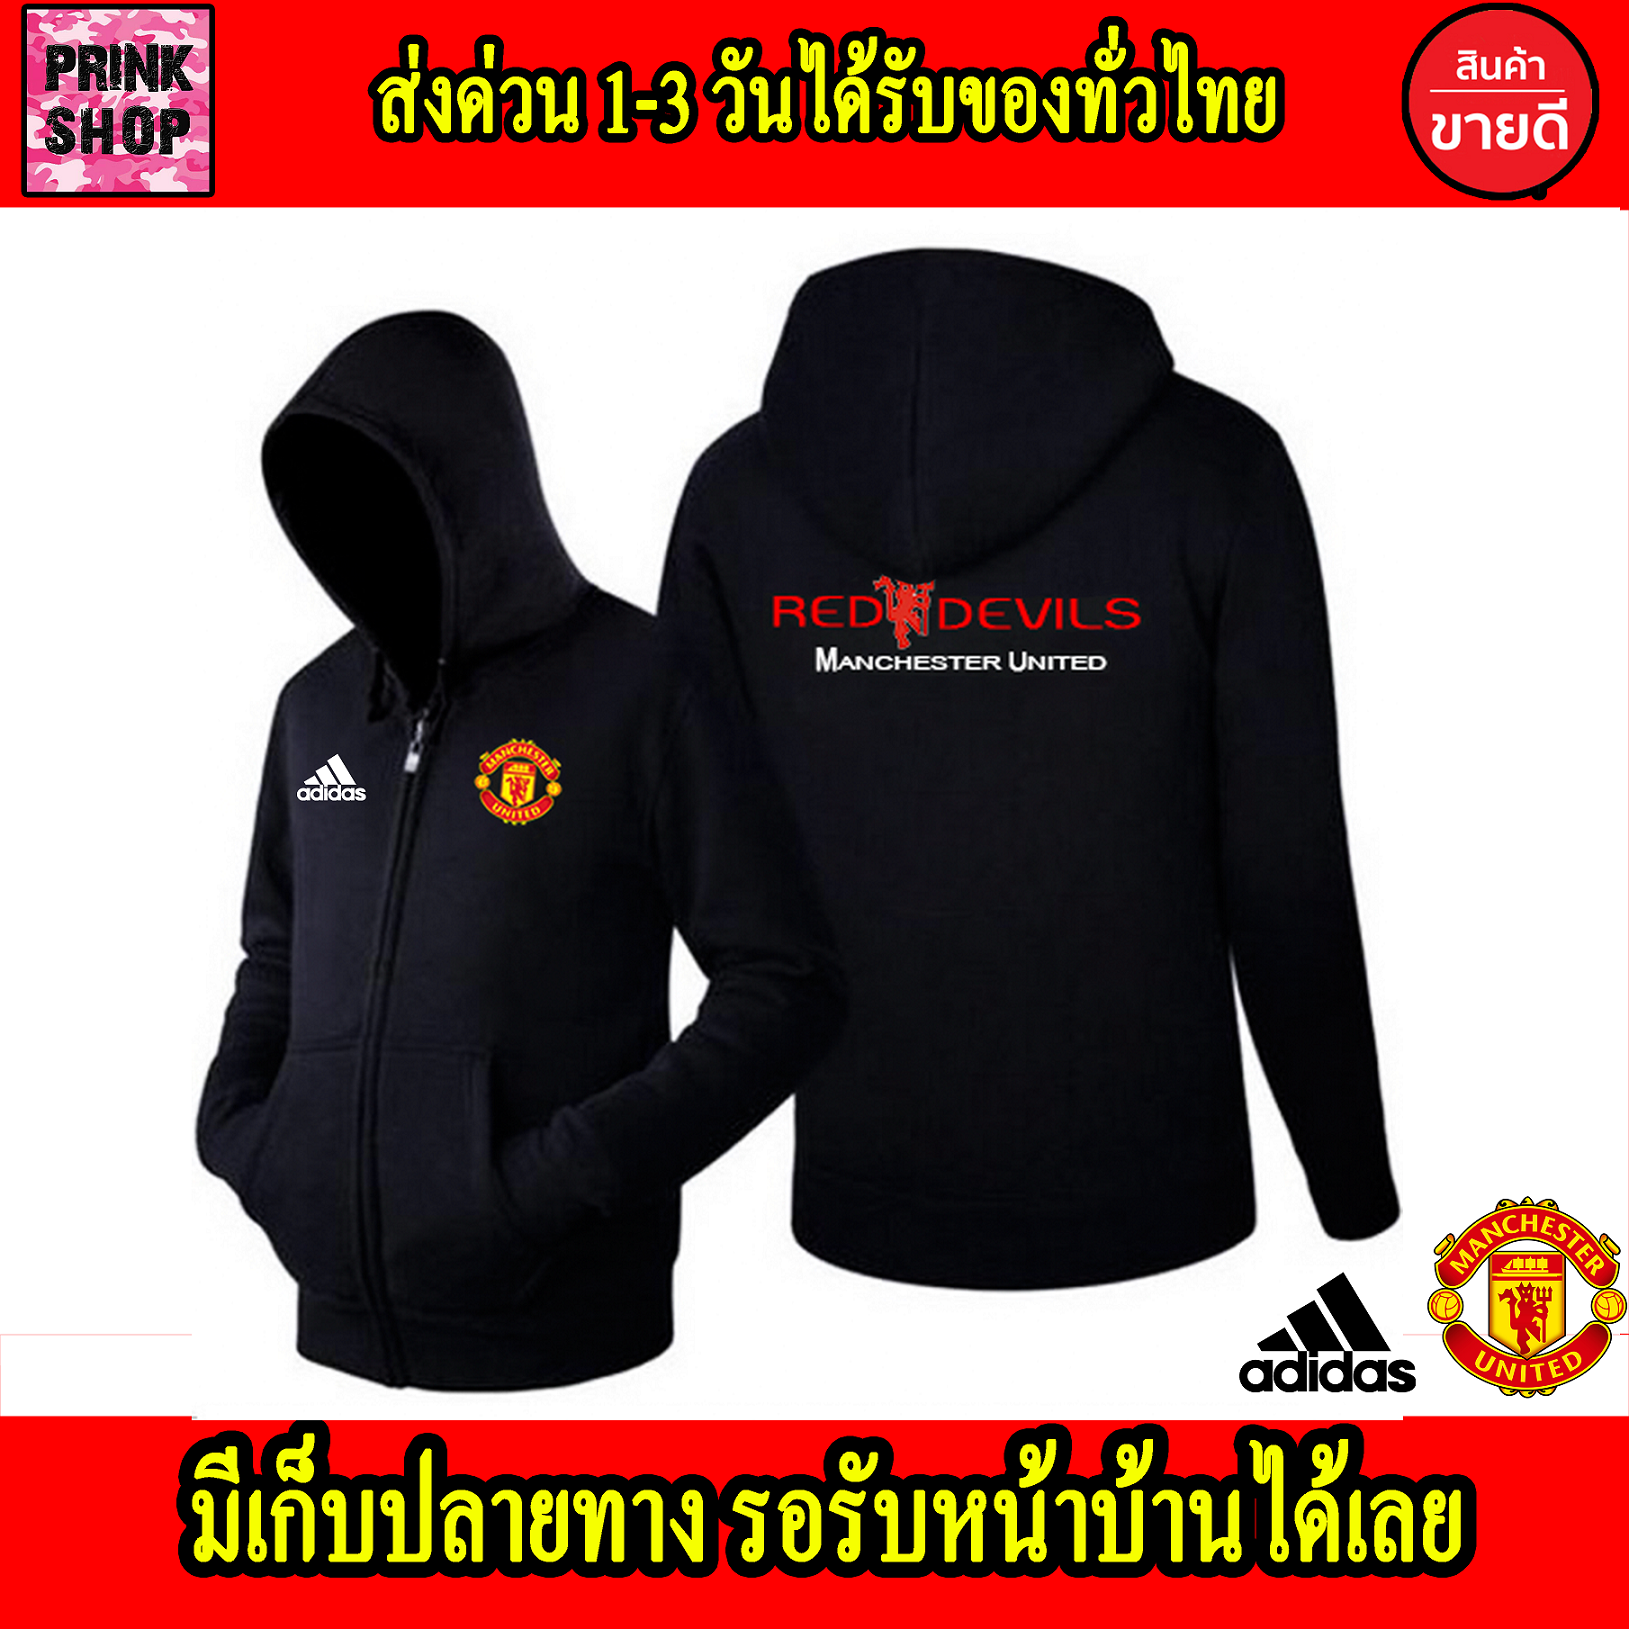 ถูกที่สุด เสื้อฮู้ด Man U แมนเชสเตอร์ ยูไนเต็ด Manchester United แมนยู แบบซิป สวม สกรีนแบบเฟล็ก PU สวยสดไม่แตกไม่ลอก ส่งด่วนทั่วไทย